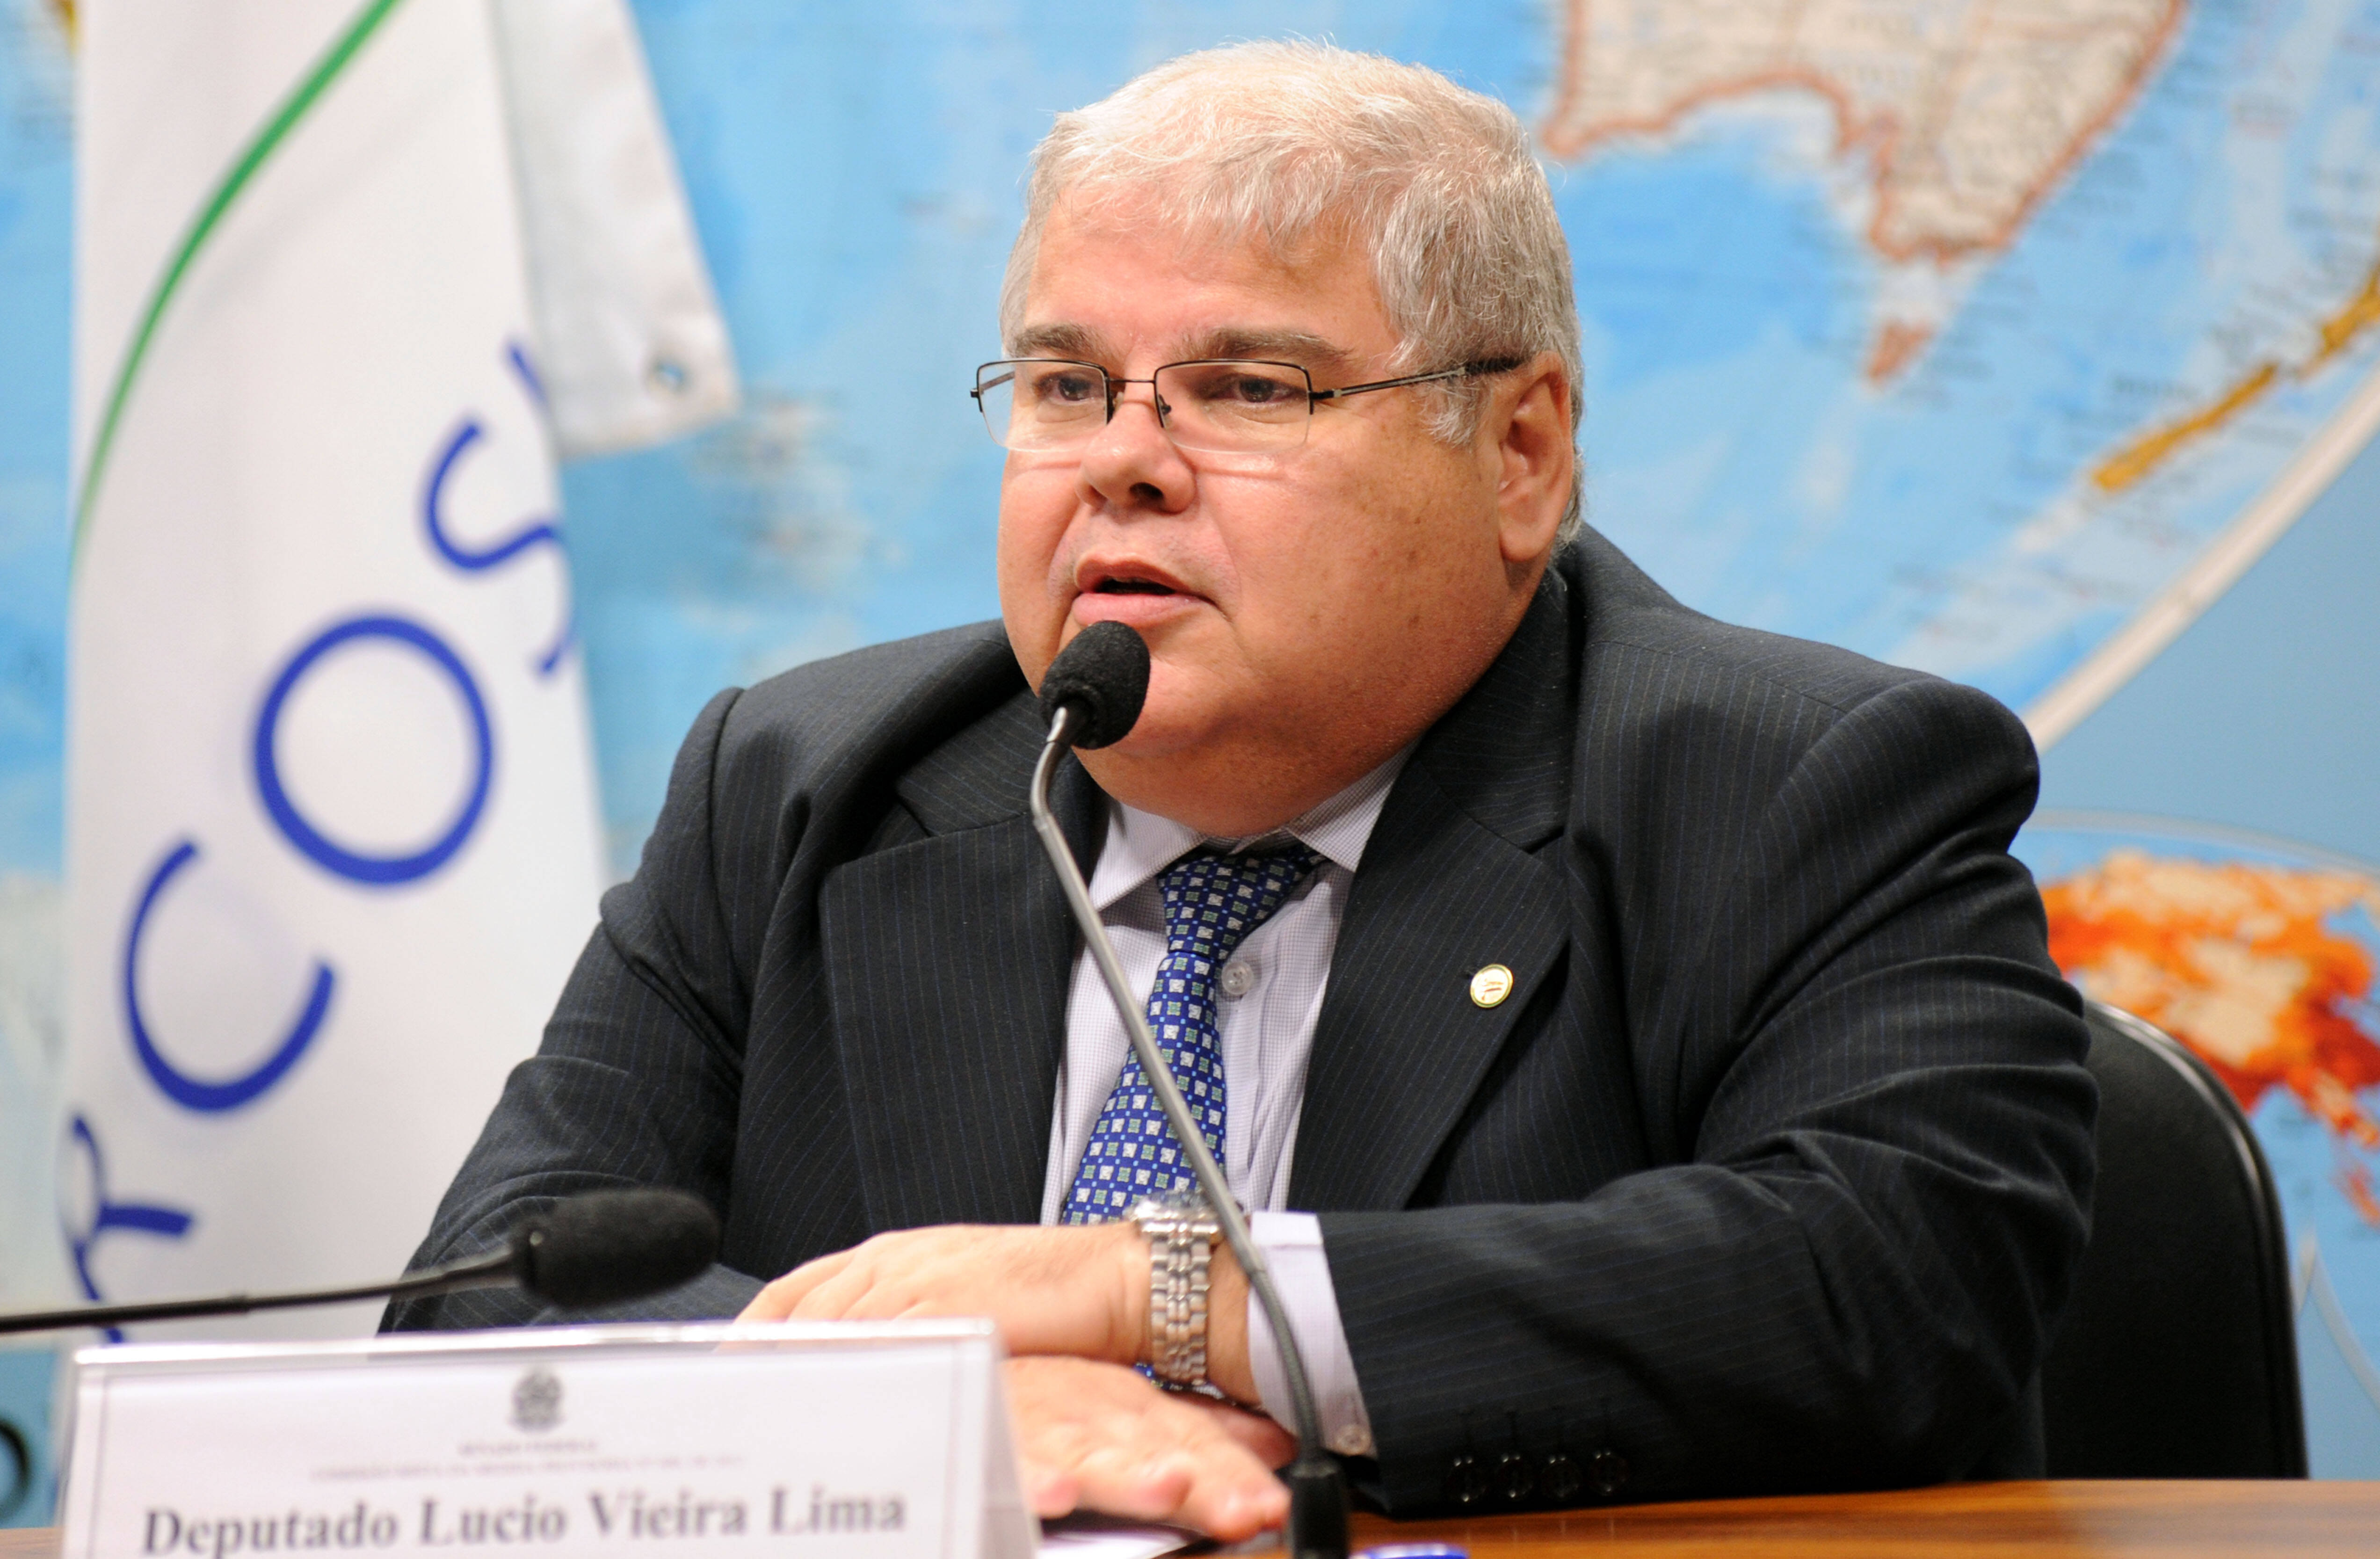 O deputado Lúcio Vieira Lima (BA) é indicado do PMDB para a comissão do impeachment.. Foto: Lúcio Bernardo Junior/ Câmara dos Deputados - 24.04.13